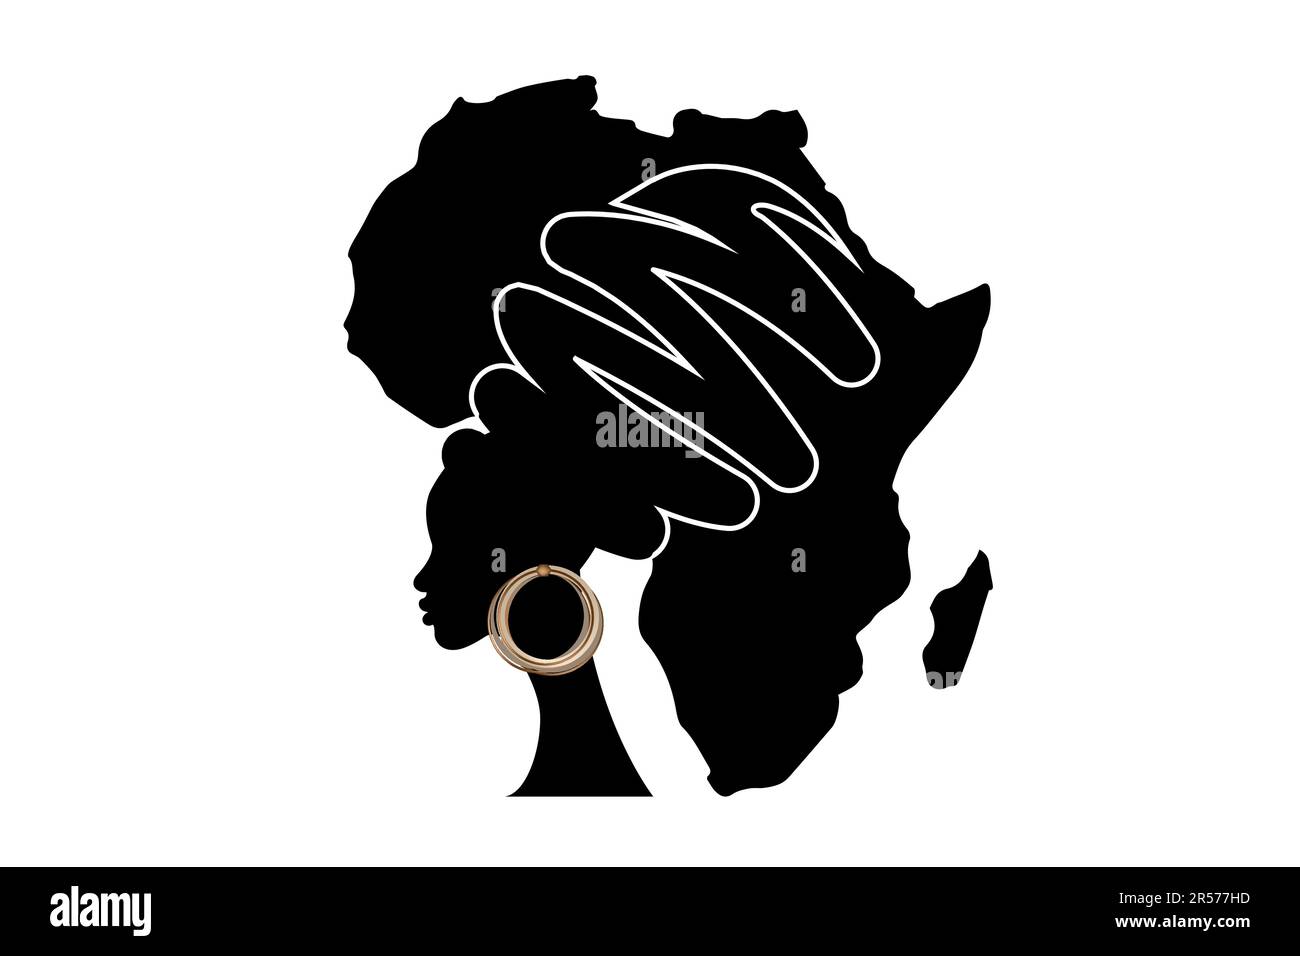 Afrique mère, portrait de femme africaine en turban ethnique, silhouette, carte du continent africain. Mois national de l'histoire des Noirs. Concept de vacances. Logo afro Illustration de Vecteur